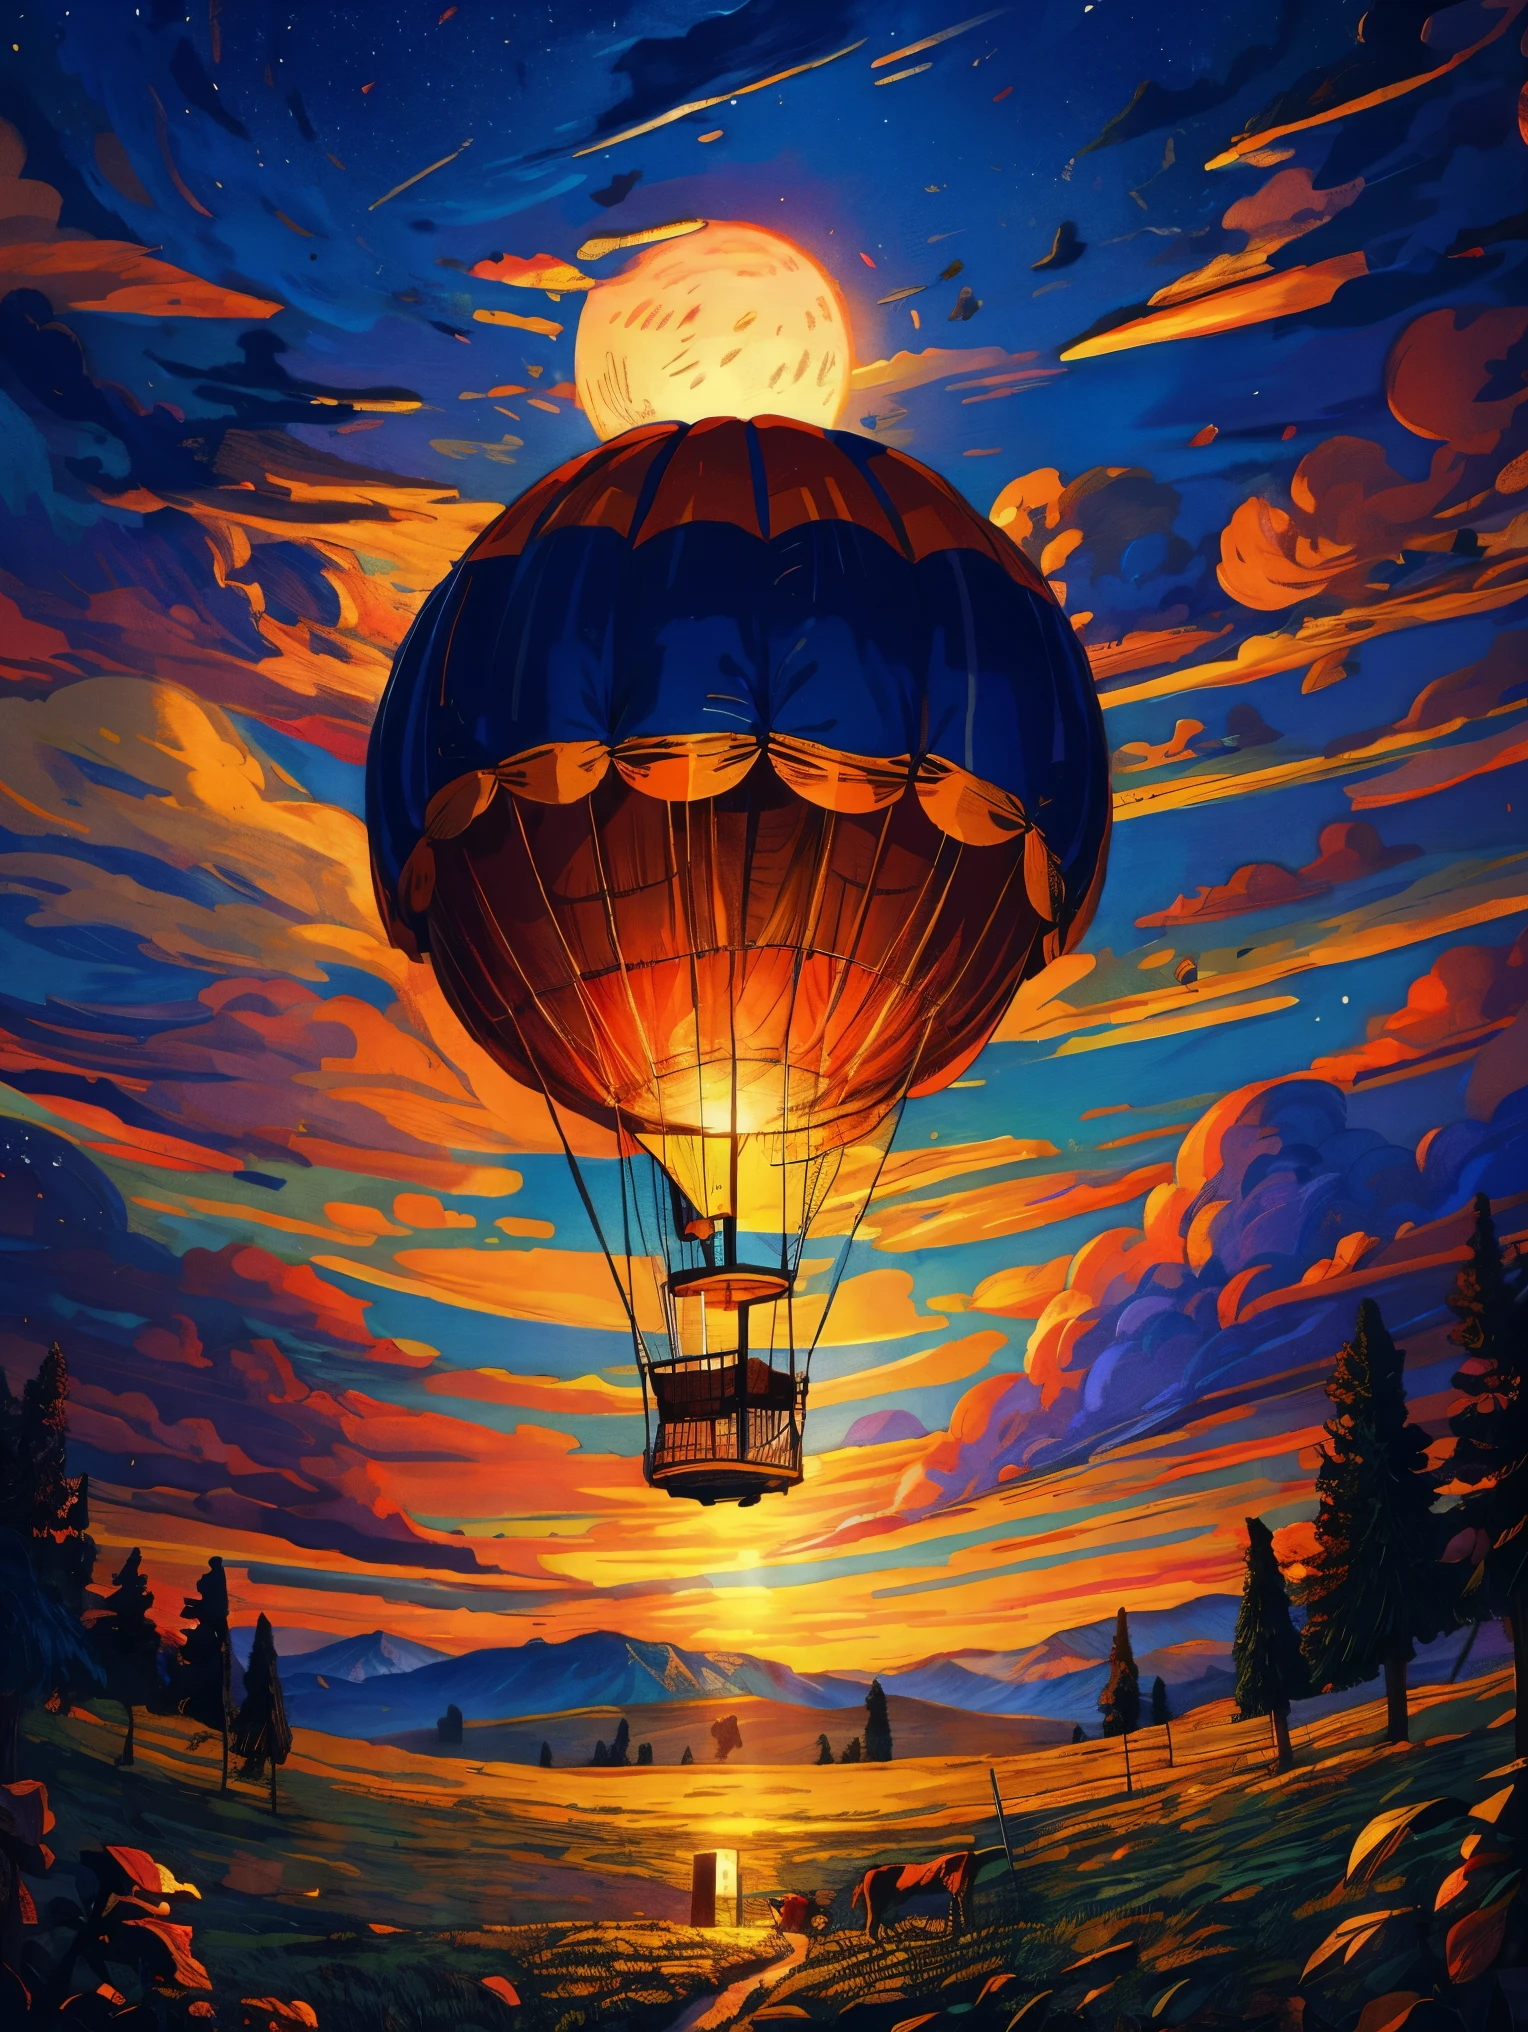 (zeichnung auf papier) eines (groß) Heißluftballon, romantische magische Ströme, sternenklare Mondnacht, gotische Burg, Berge